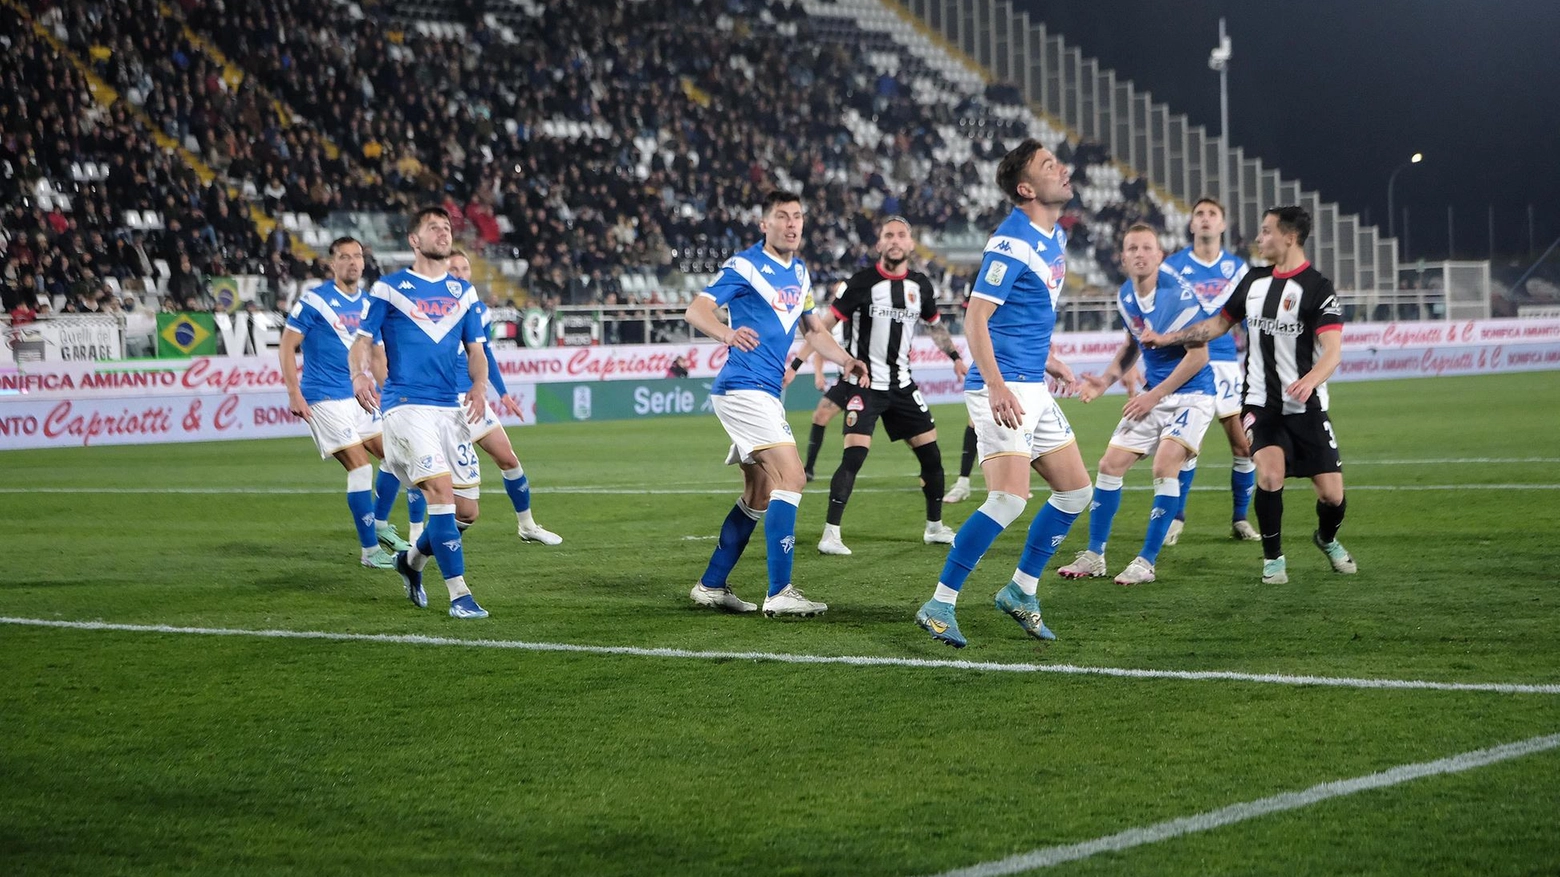 Il Brescia ottiene un importante pareggio contro l'Ascoli, con Mendes che segna su rigore e Dickmann che pareggia. Partita equilibrata con capovolgimenti di fronte, finisce 1-1.